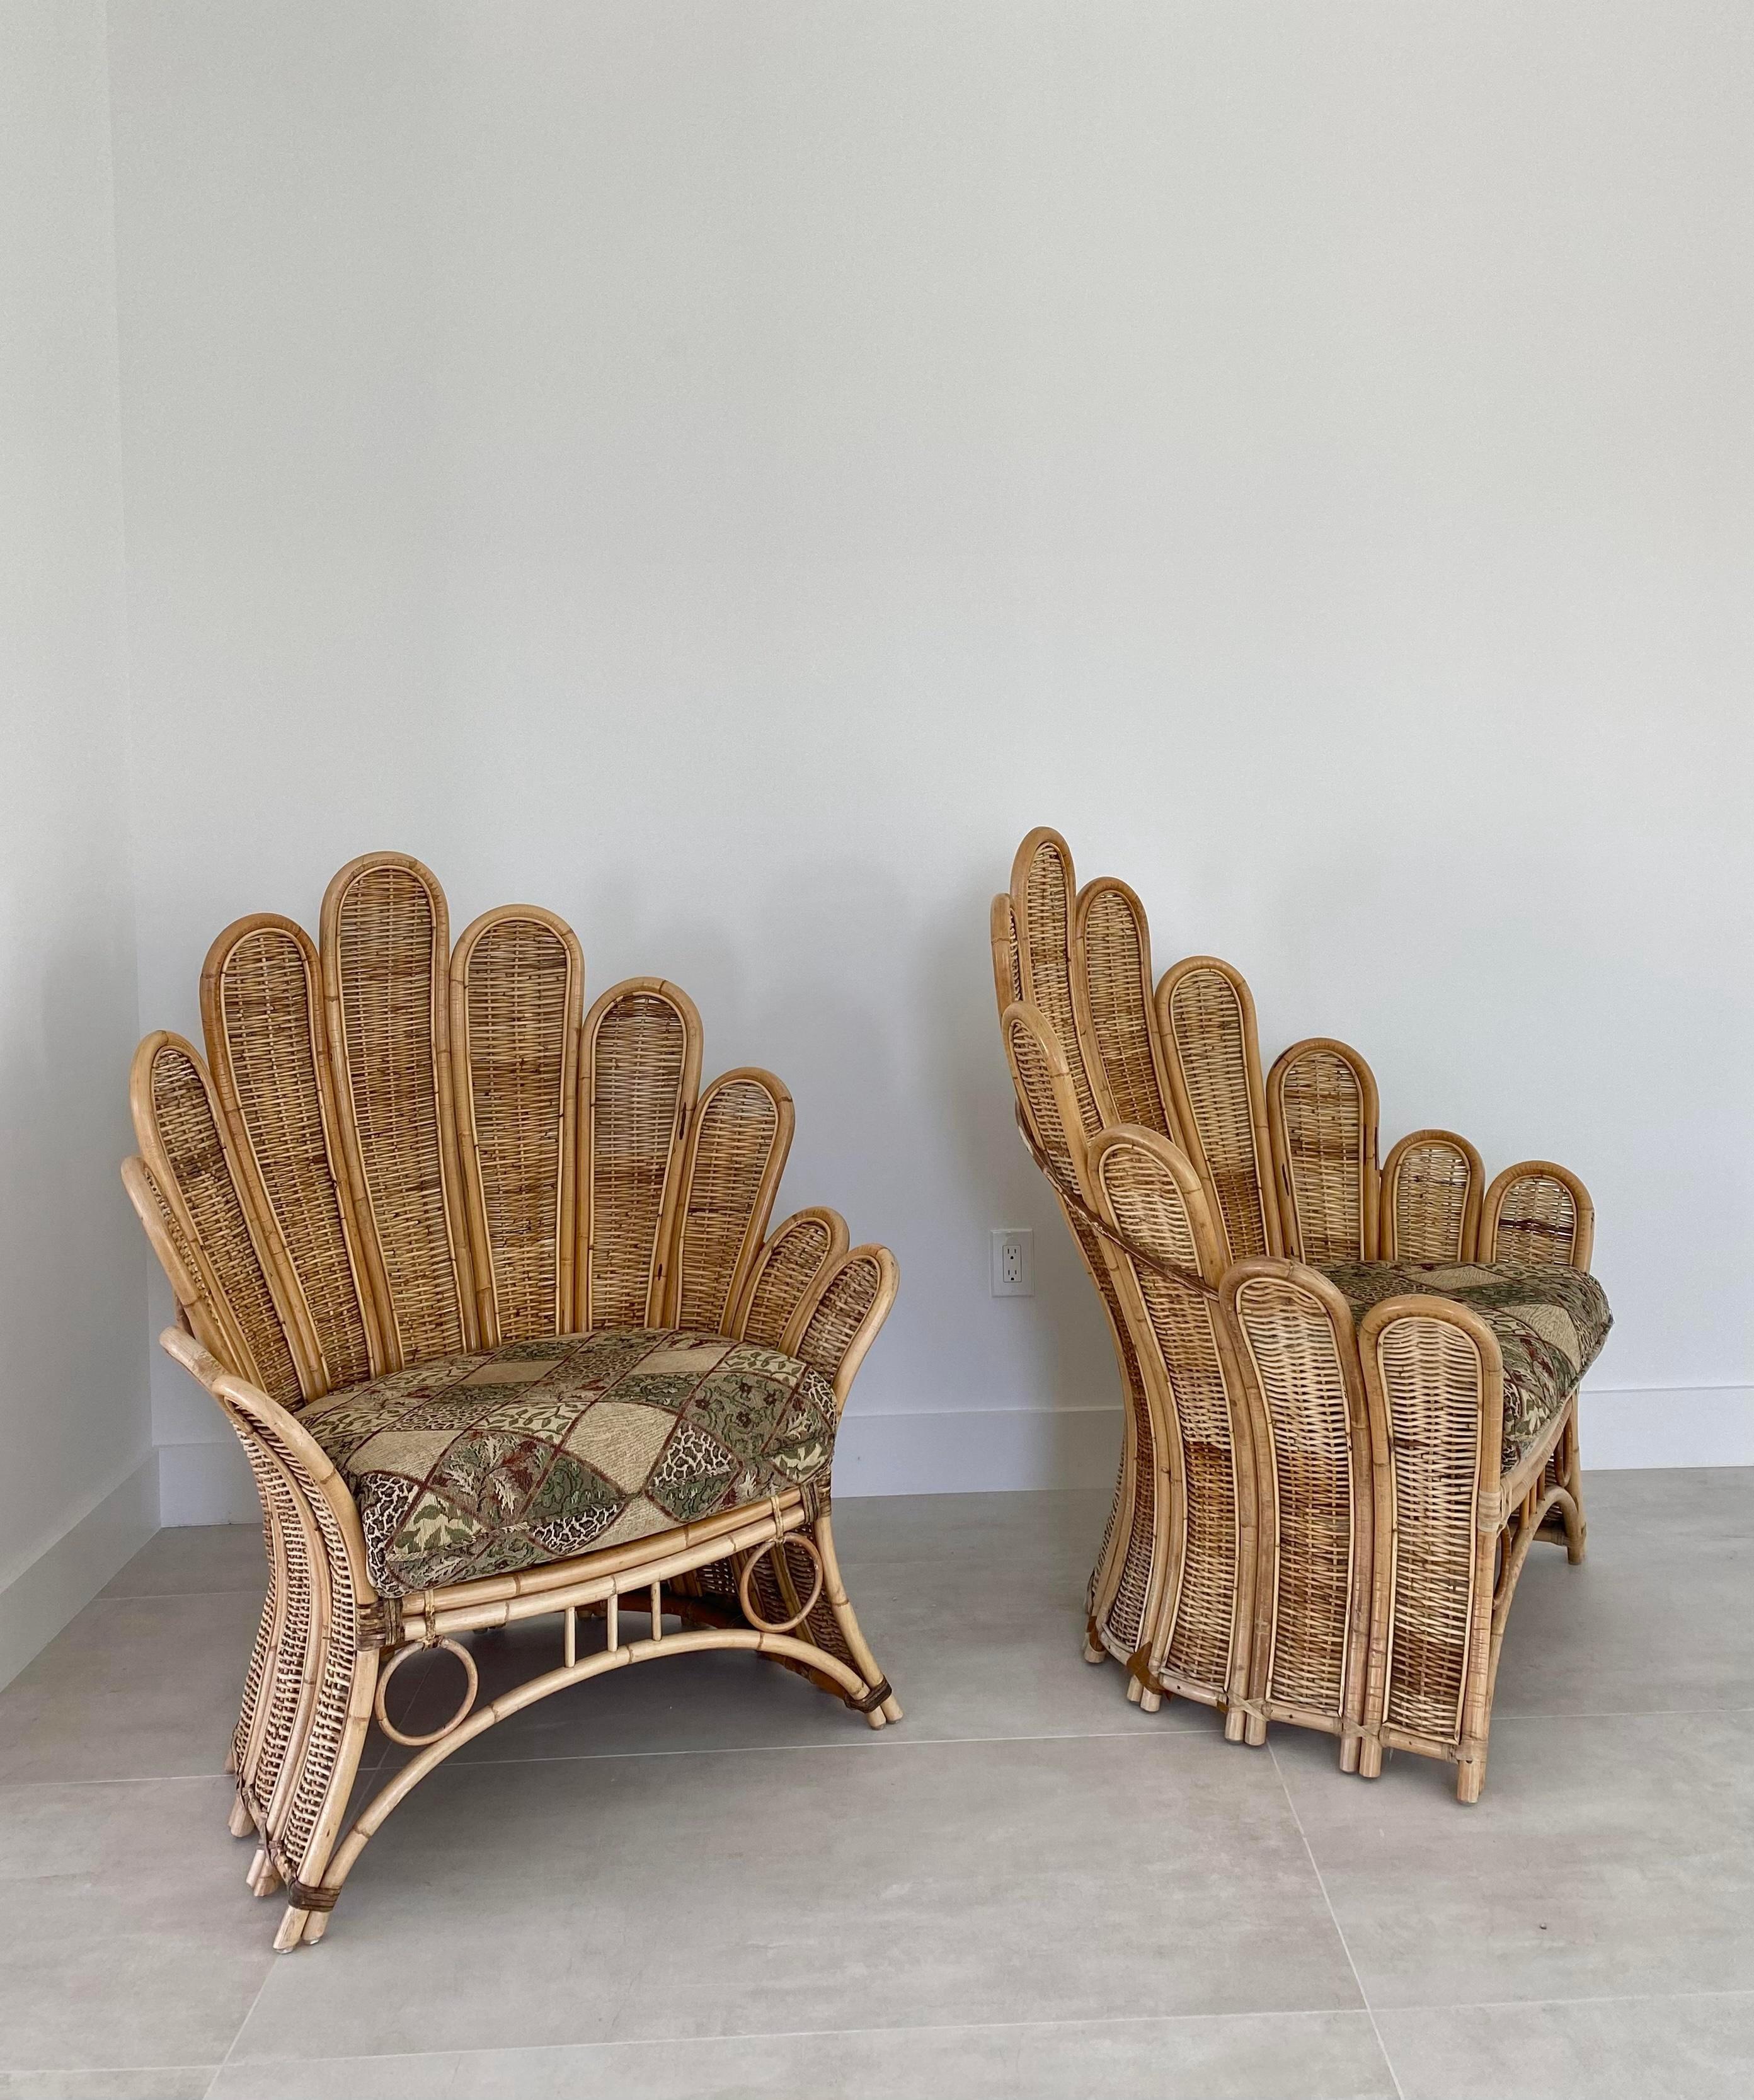 Chaises longues en palmier à grande échelle, vers les années 1980. Un design iconique, dans des cadres en rotin et en osier construits par des experts, avec des accents de reliure en cuir de qualité. Ces chaises sont rares sur le marché, surtout en